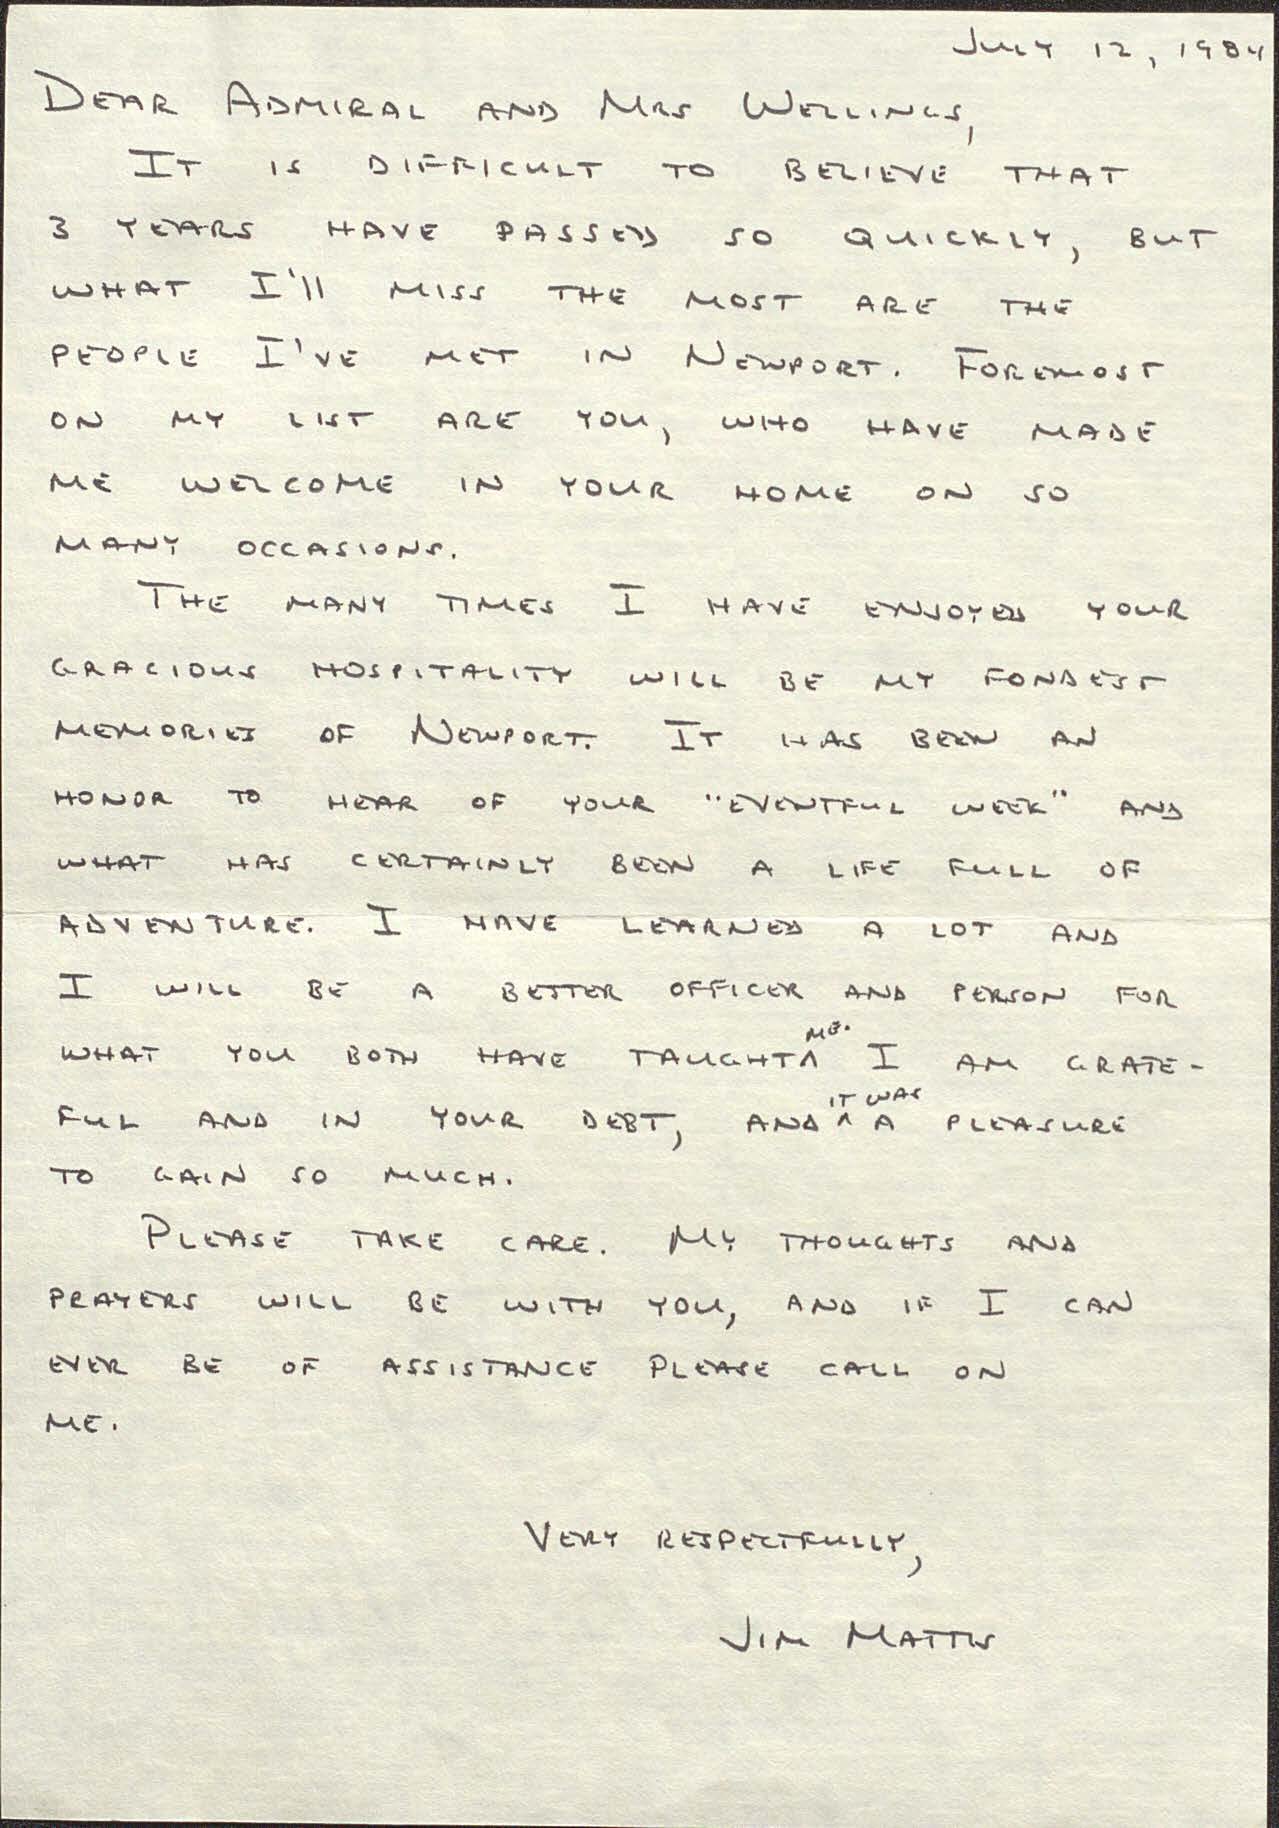 Letter from Major Jim Mattis, USMC to RADM and Mrs. Joseph H. Wellings